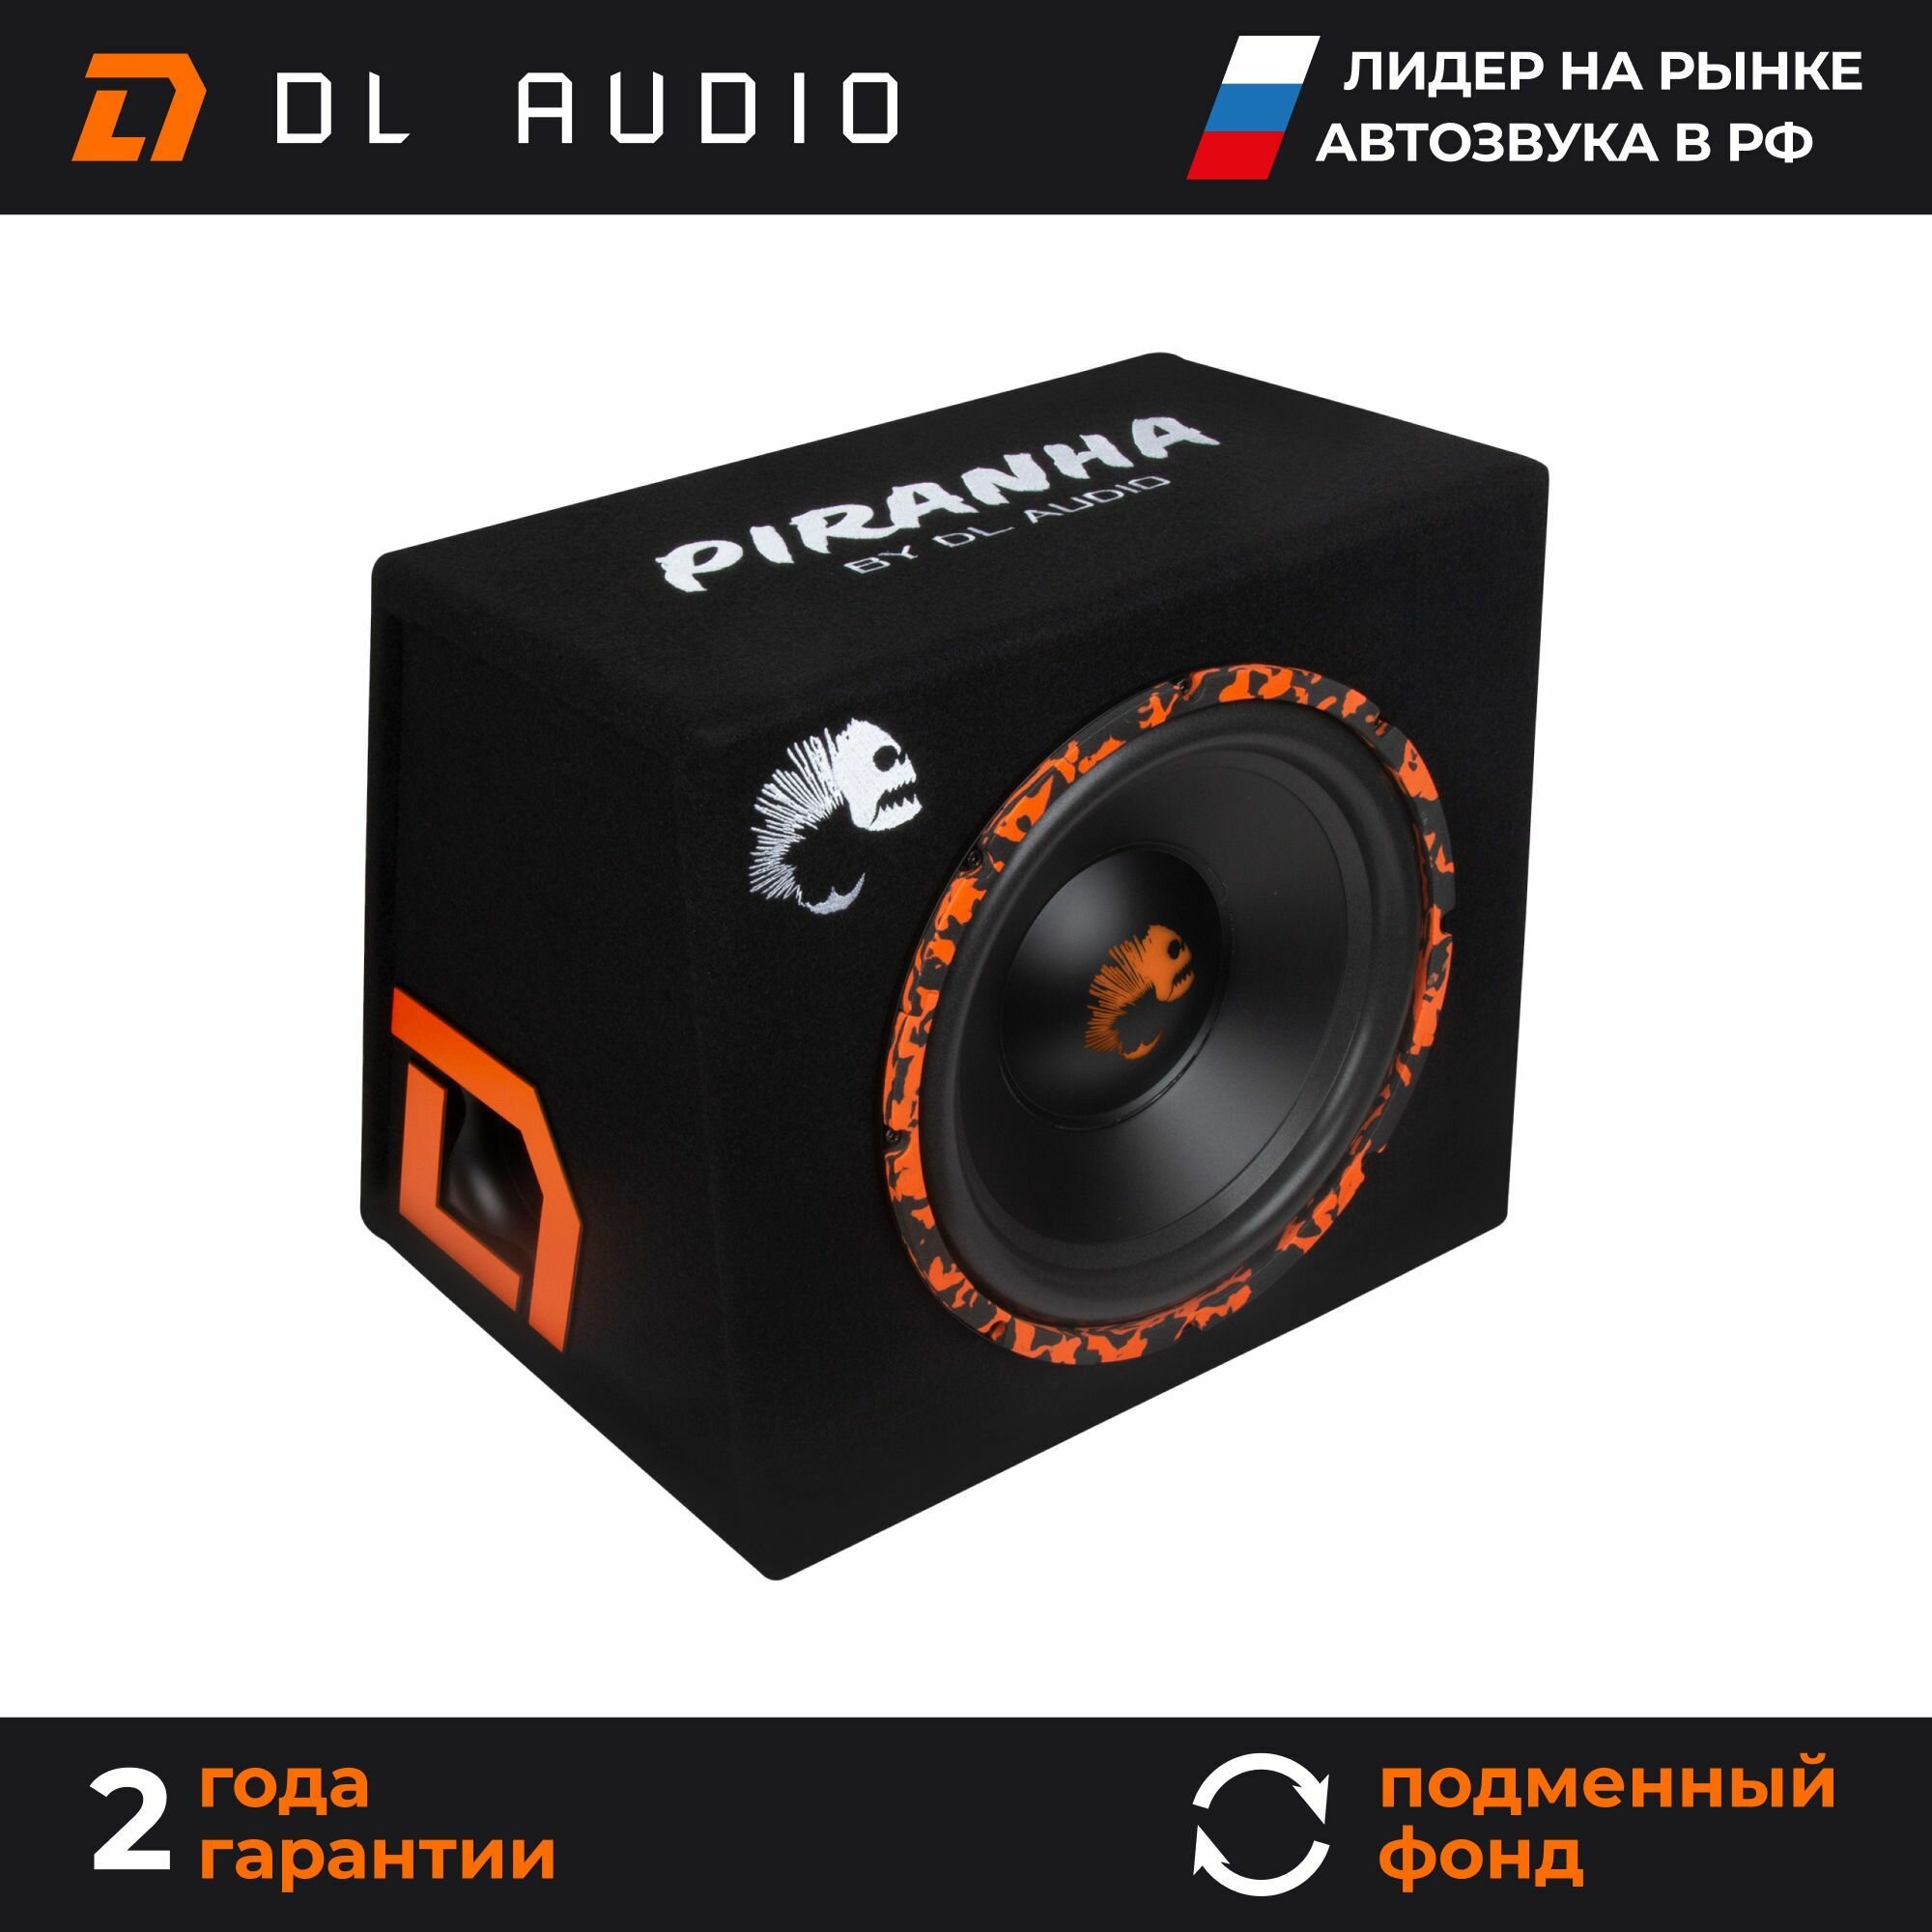 Активный сабвуфер автомобильный DL Audio Piranha 12A SE